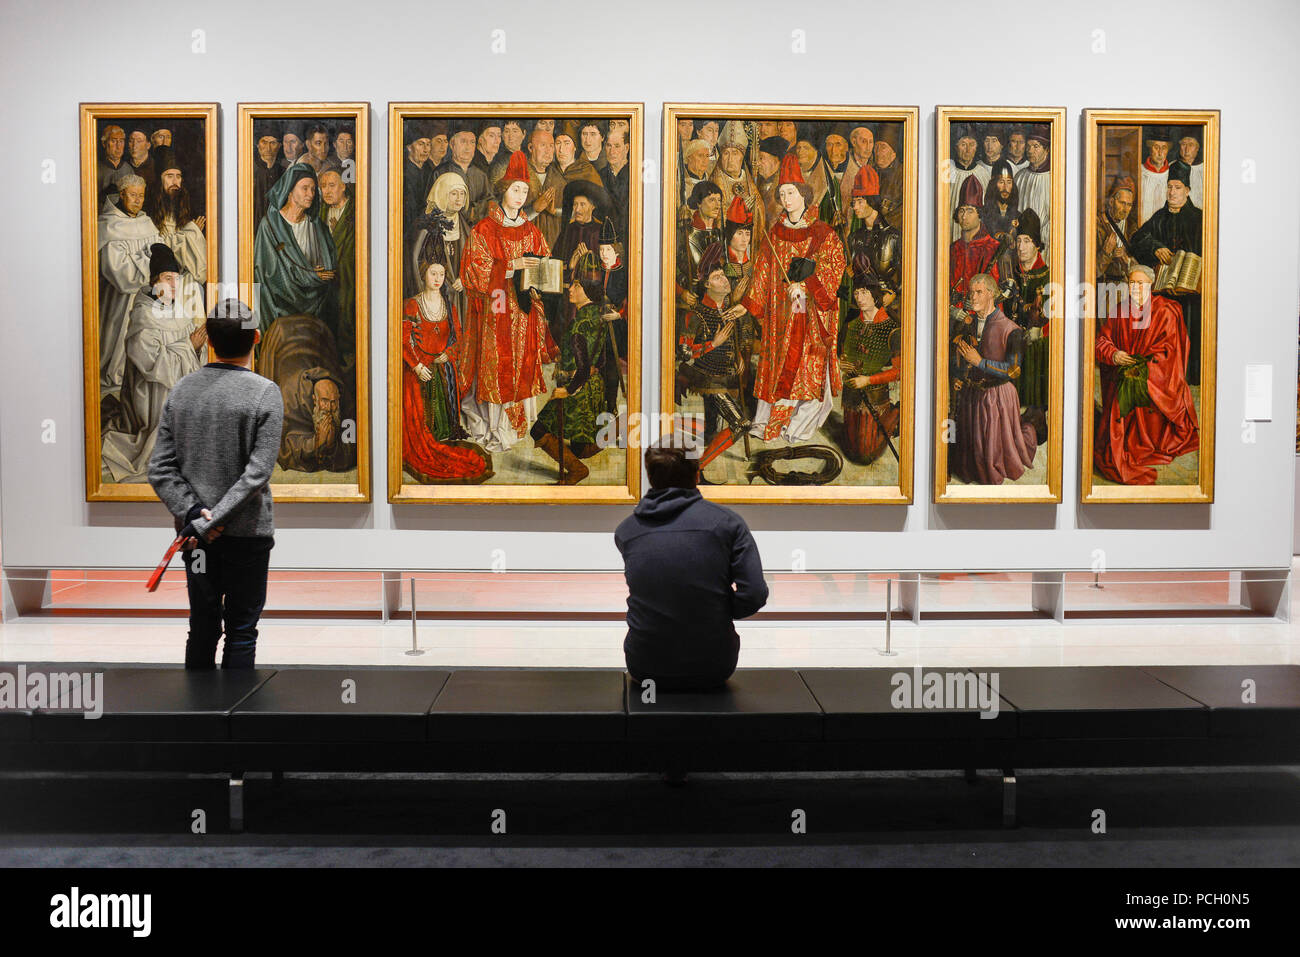 Portugal, Lisbonne : Museu Nacional de Arte Antiga, Musée National d'Art Ancien, à la St Vincent peinture sur panneau datant du Xvème siècle Banque D'Images